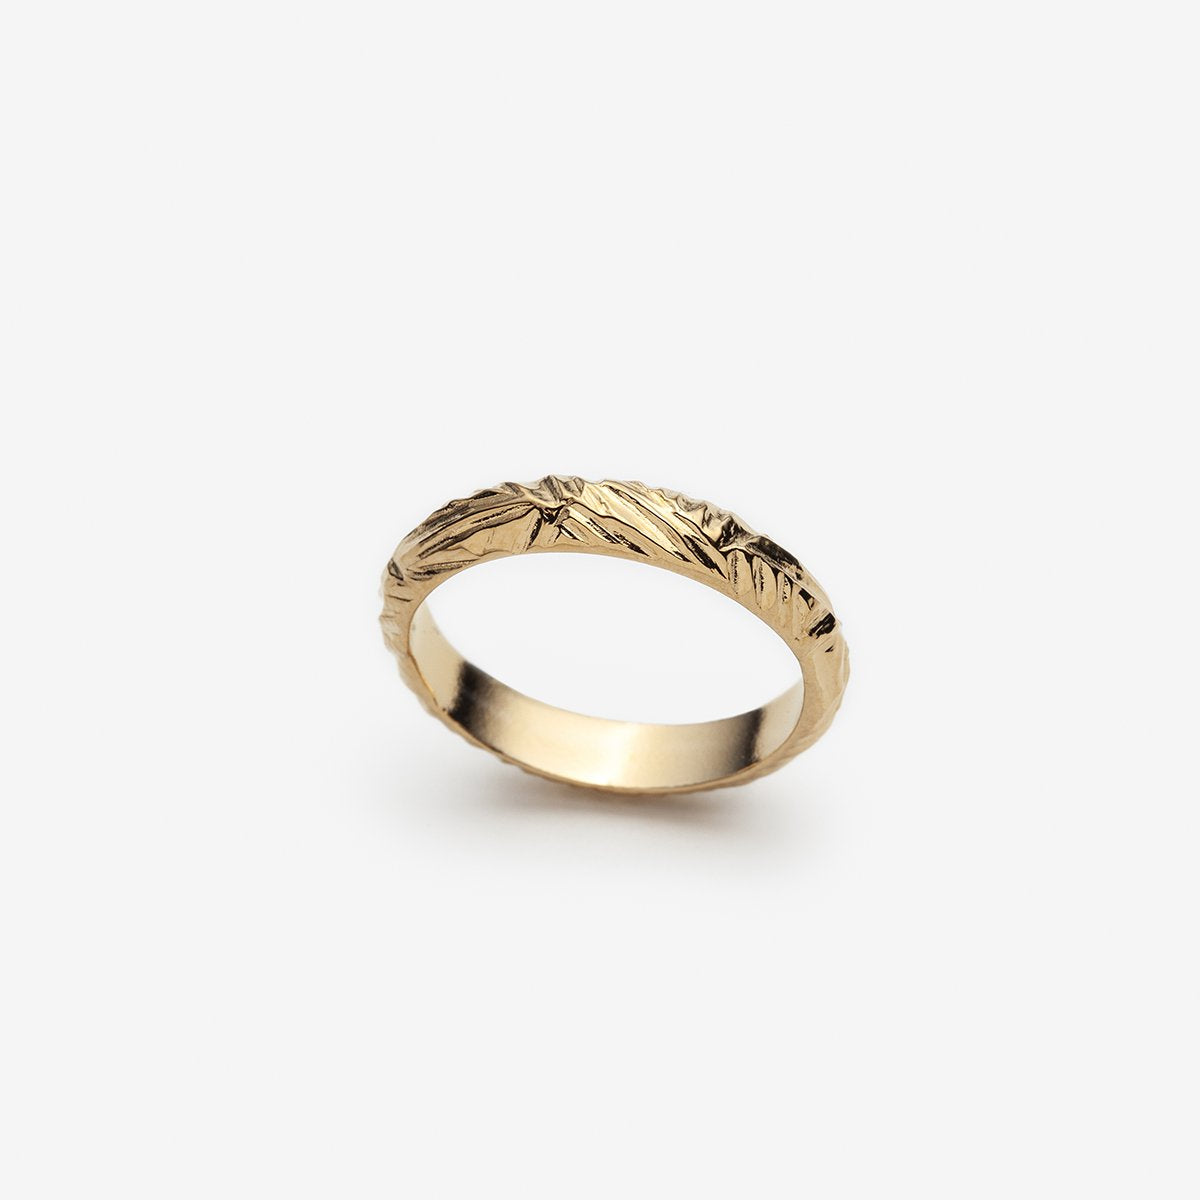 Missmister Gold Plated Lakshmi Finger Ring with Tortoise Shape, Vaastu